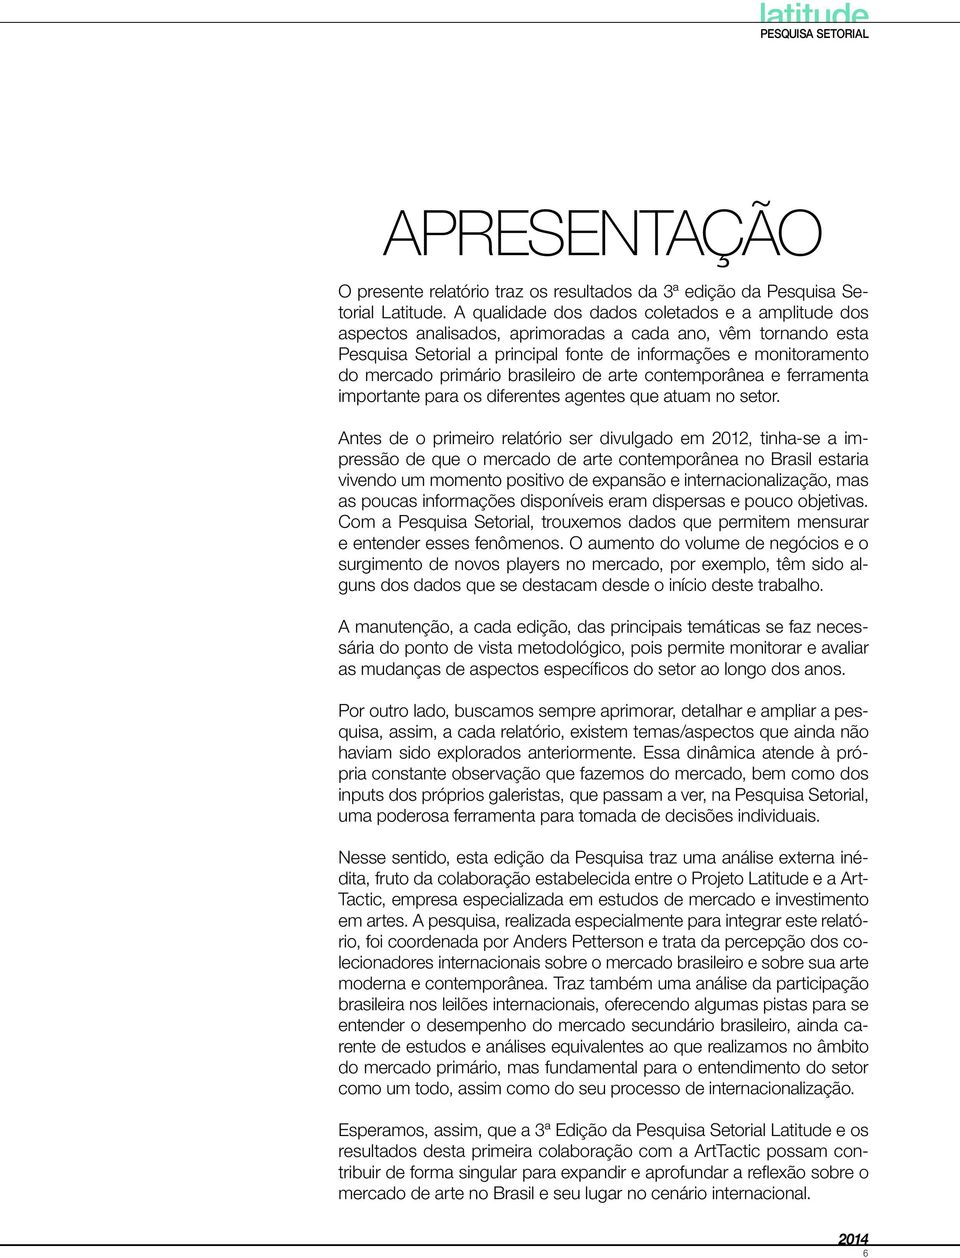 brasileiro de arte contemporânea e ferramenta importante para os diferentes agentes que atuam no setor.